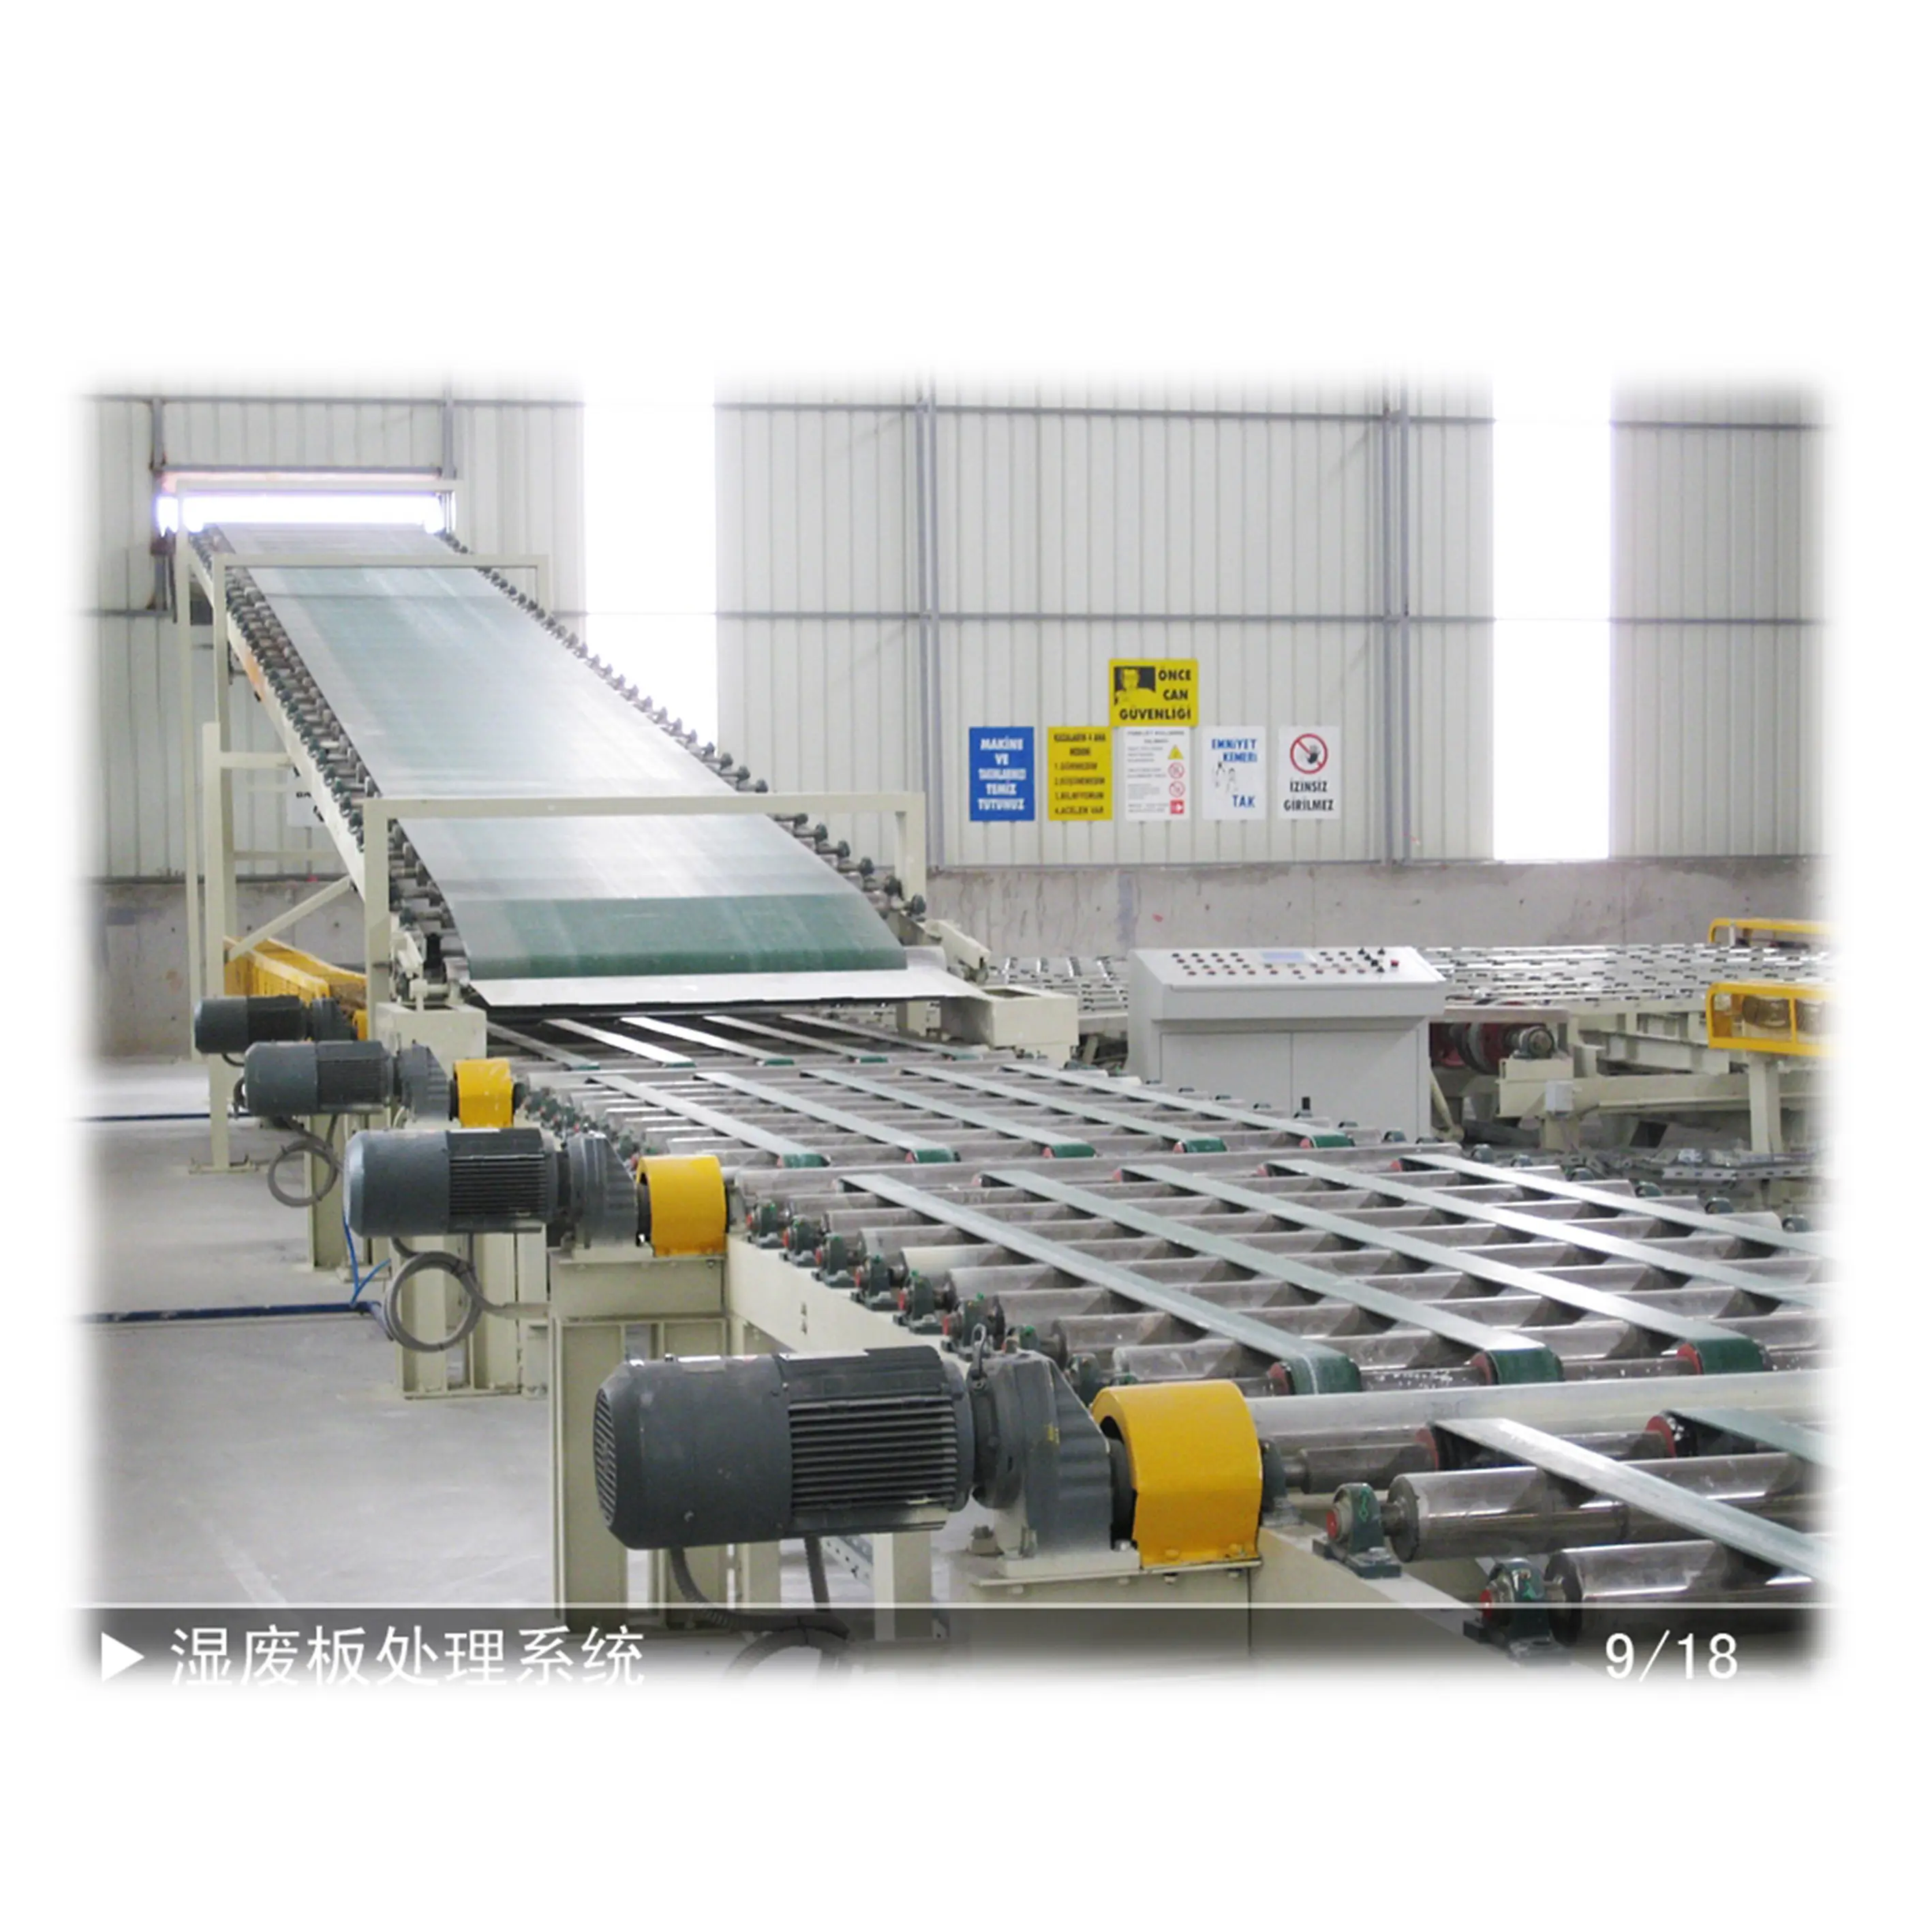 Kağıt yüzlü alçıpan alçıpan ve panel yapma makinesi üretim hattı bitki/tedarikçi alçı kurulu laminasyon makinesi